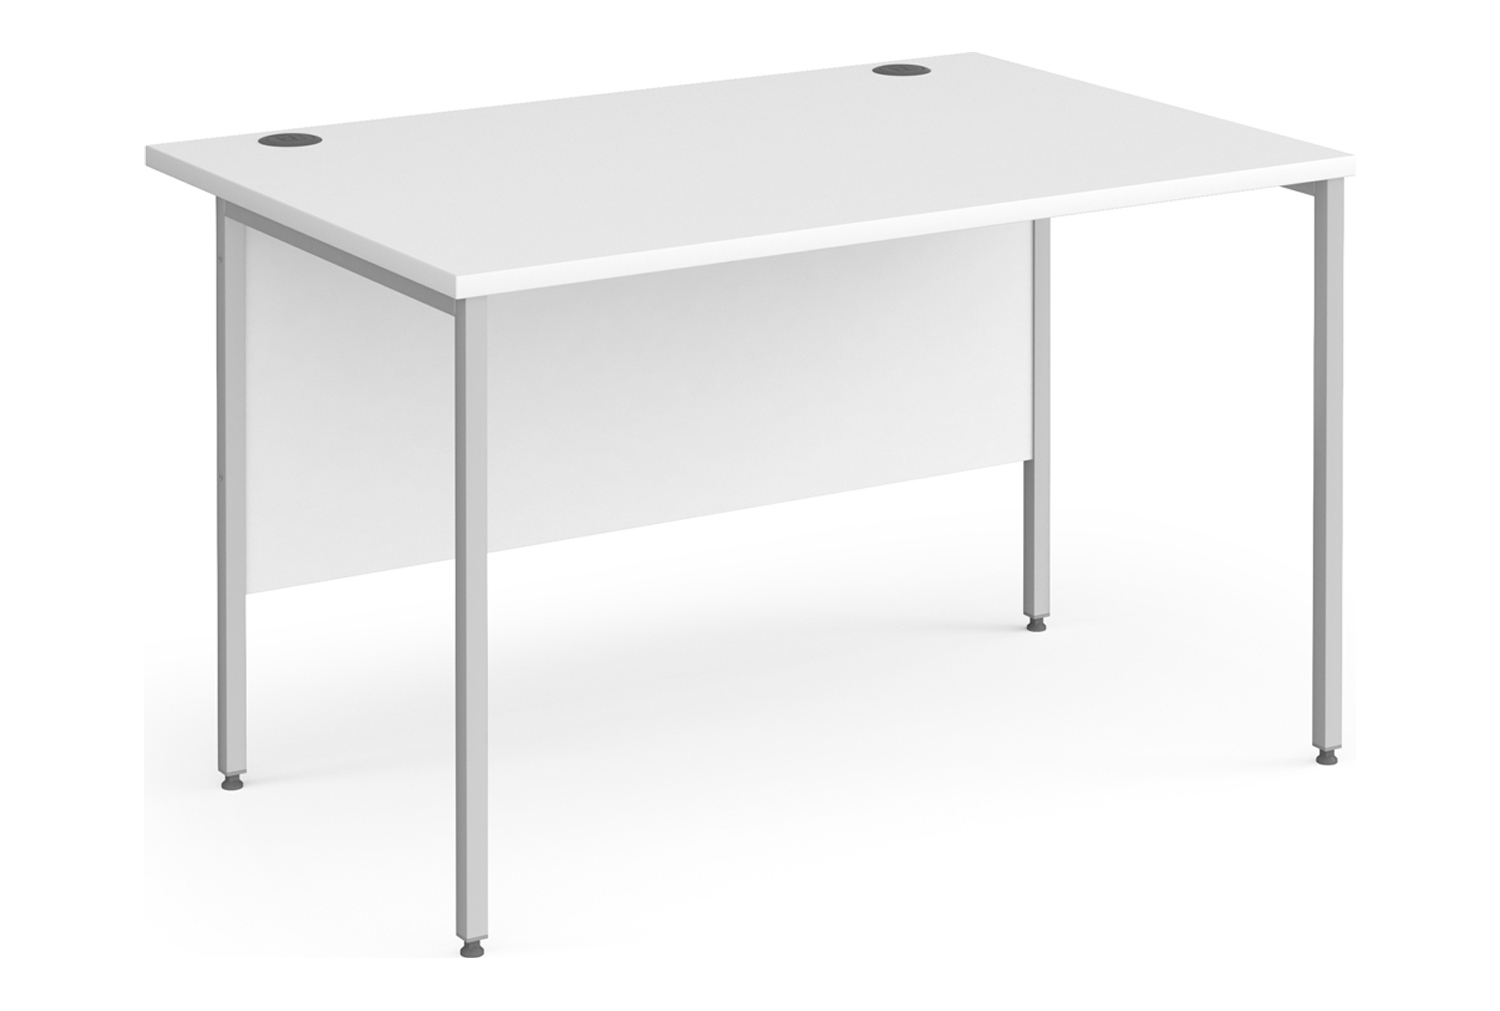 All White Rectangular H-Leg Office Desk, 120wx80dx73h (cm), Fully Installed